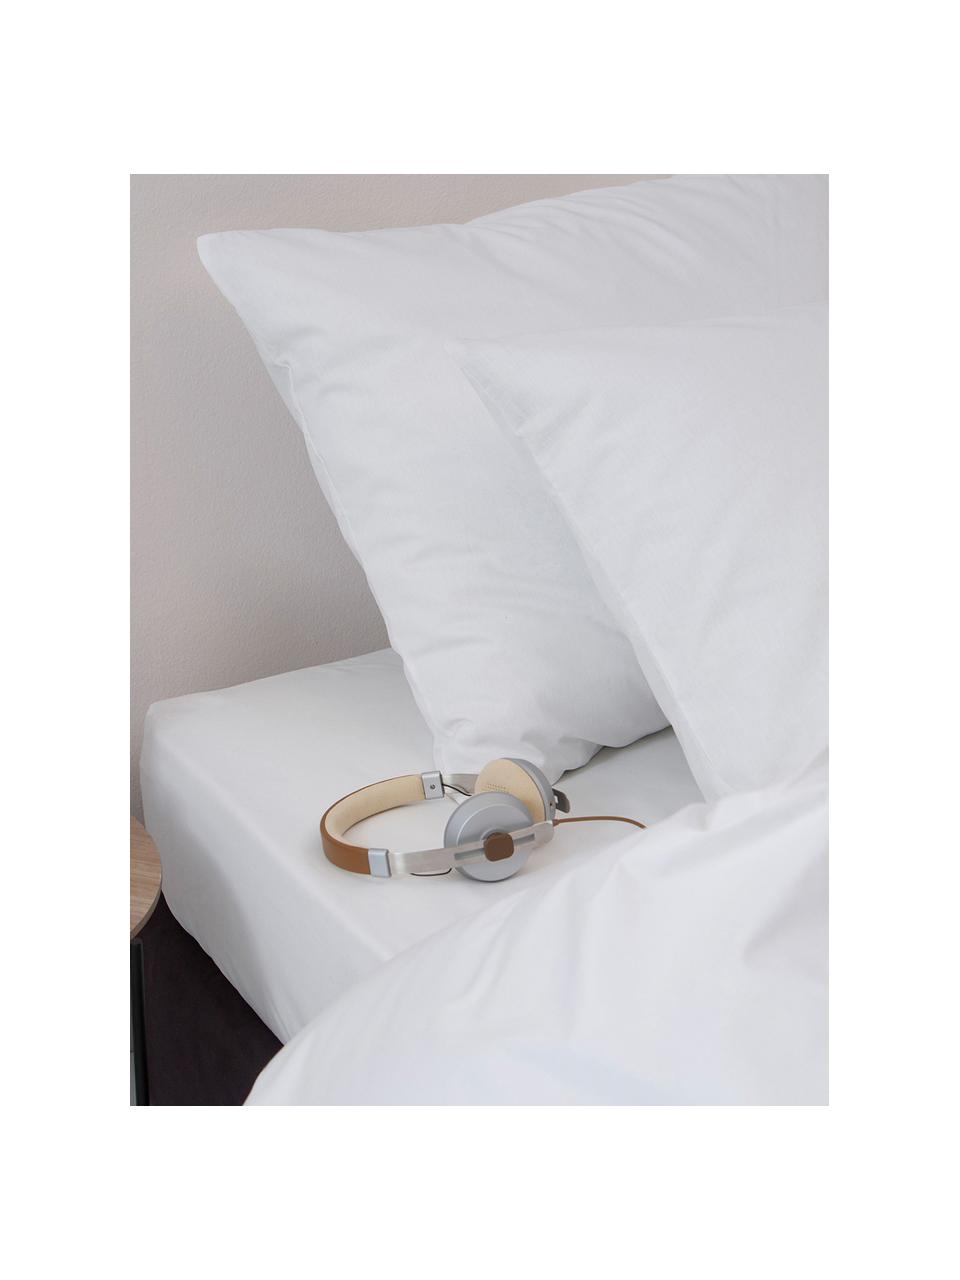 Bavlnená posteľná bielizeň Weekend, biela, 100 % bavlna
Hustota vlákna 145 TC, kvalita štandard
Posteľná bielizeň z bavlny je príjemná na dotyk, dobre absorbuje vlhkosť a je vhodná pre alergikov, Biela, 135 x 200 cm, 2 diely